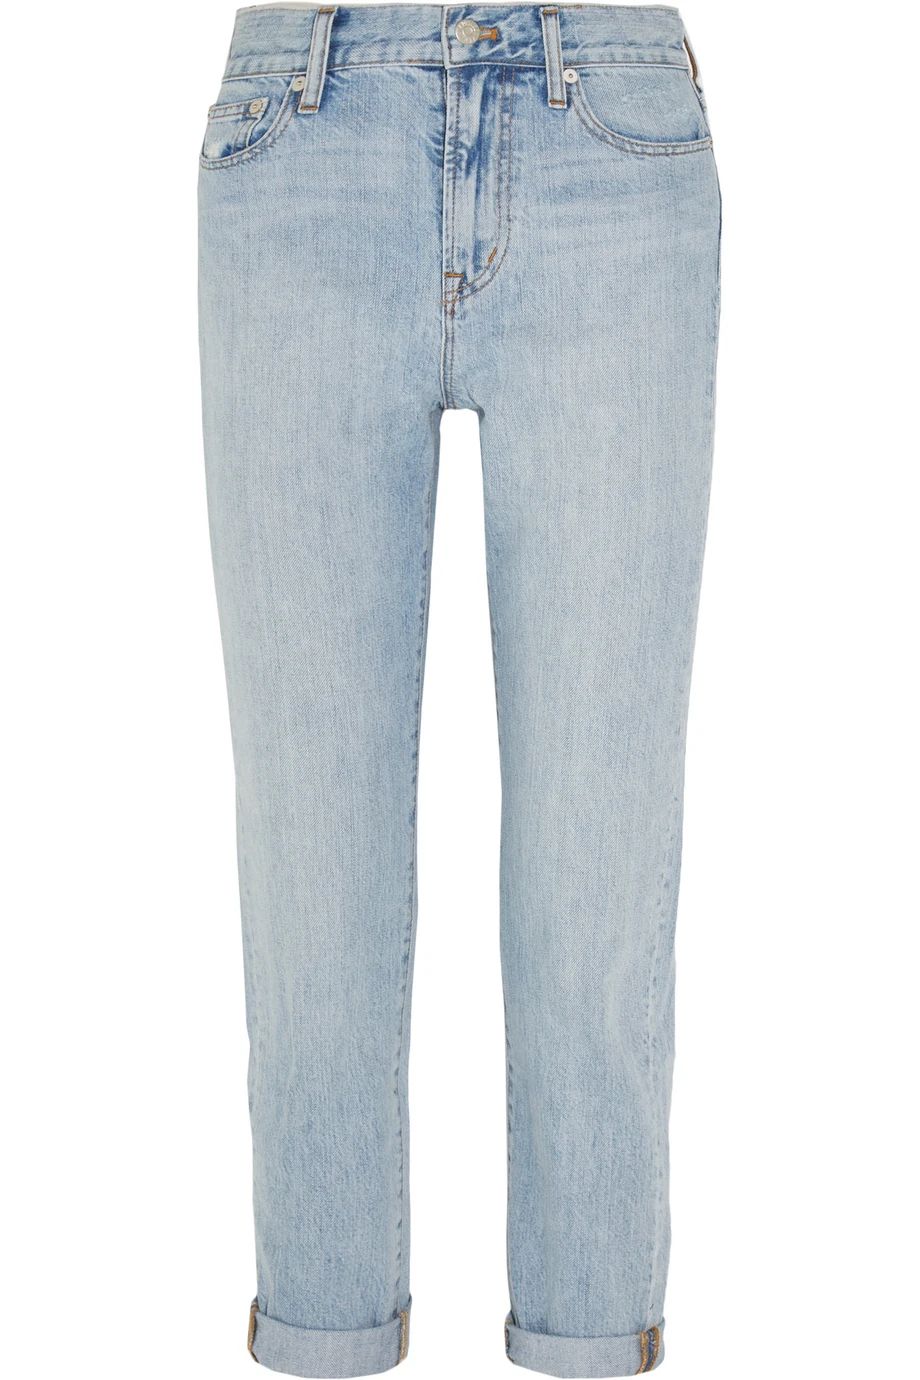 Madewell Perfect Summer Distressed Boyfriend Jeans, Light Denim, Women's, Size: 25 | NET-A-PORTER (US)